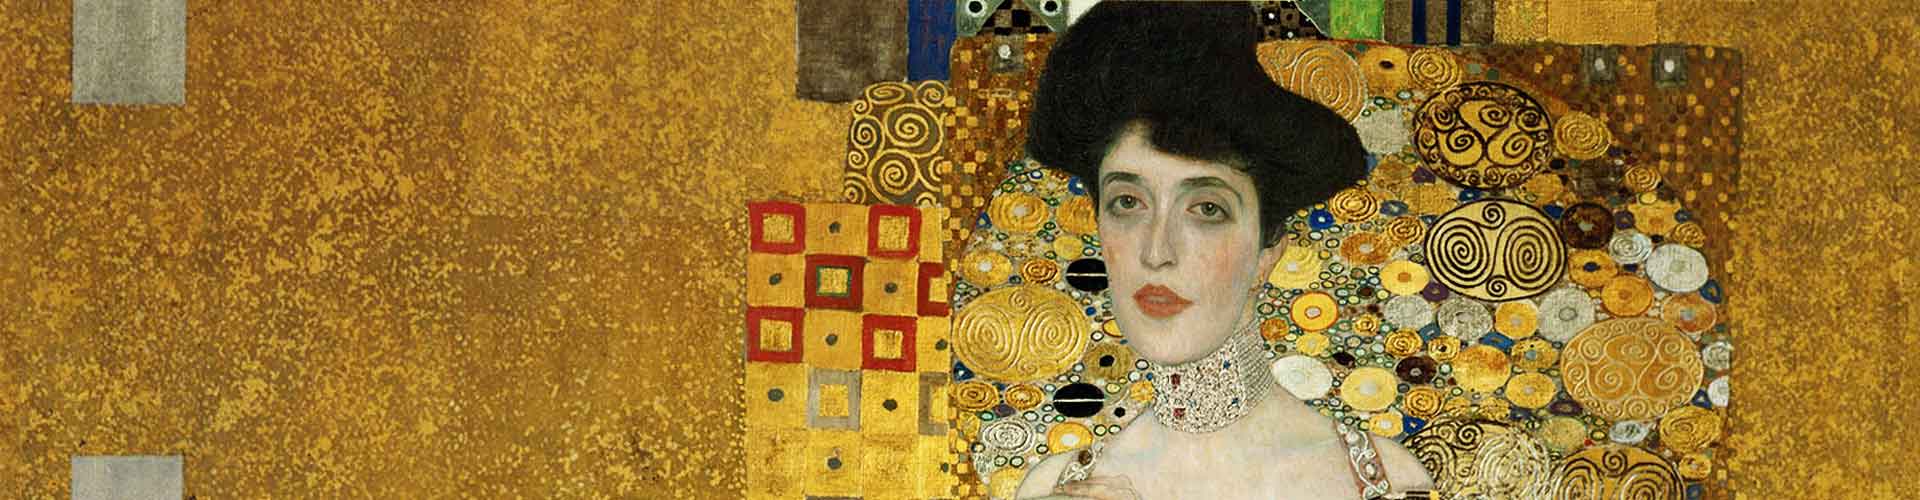 Eye Tracking Perceiving Klimt